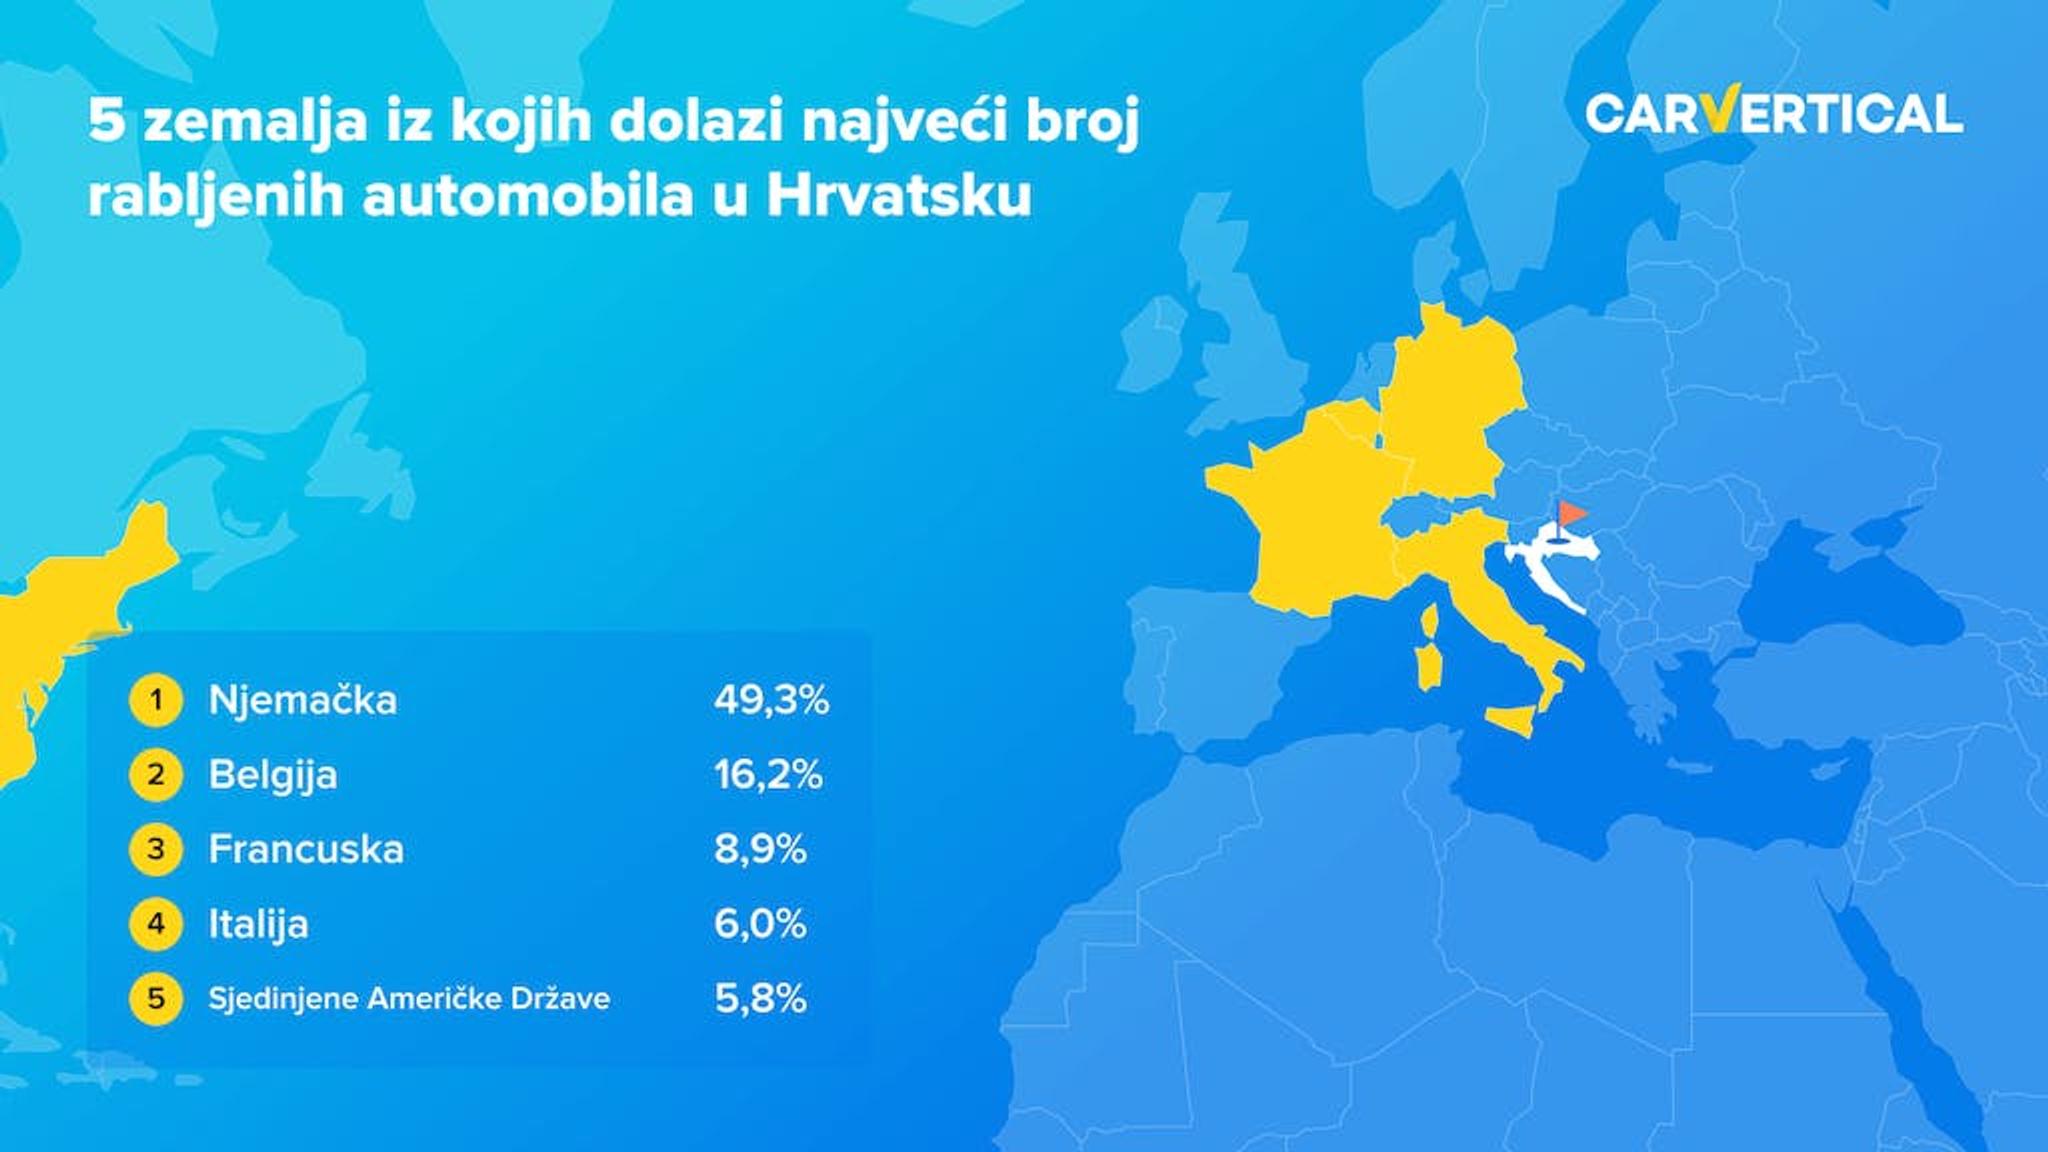 Pet zemalja iz kojih dolazi najveci broj rabljenih automobila u Hrvatsku